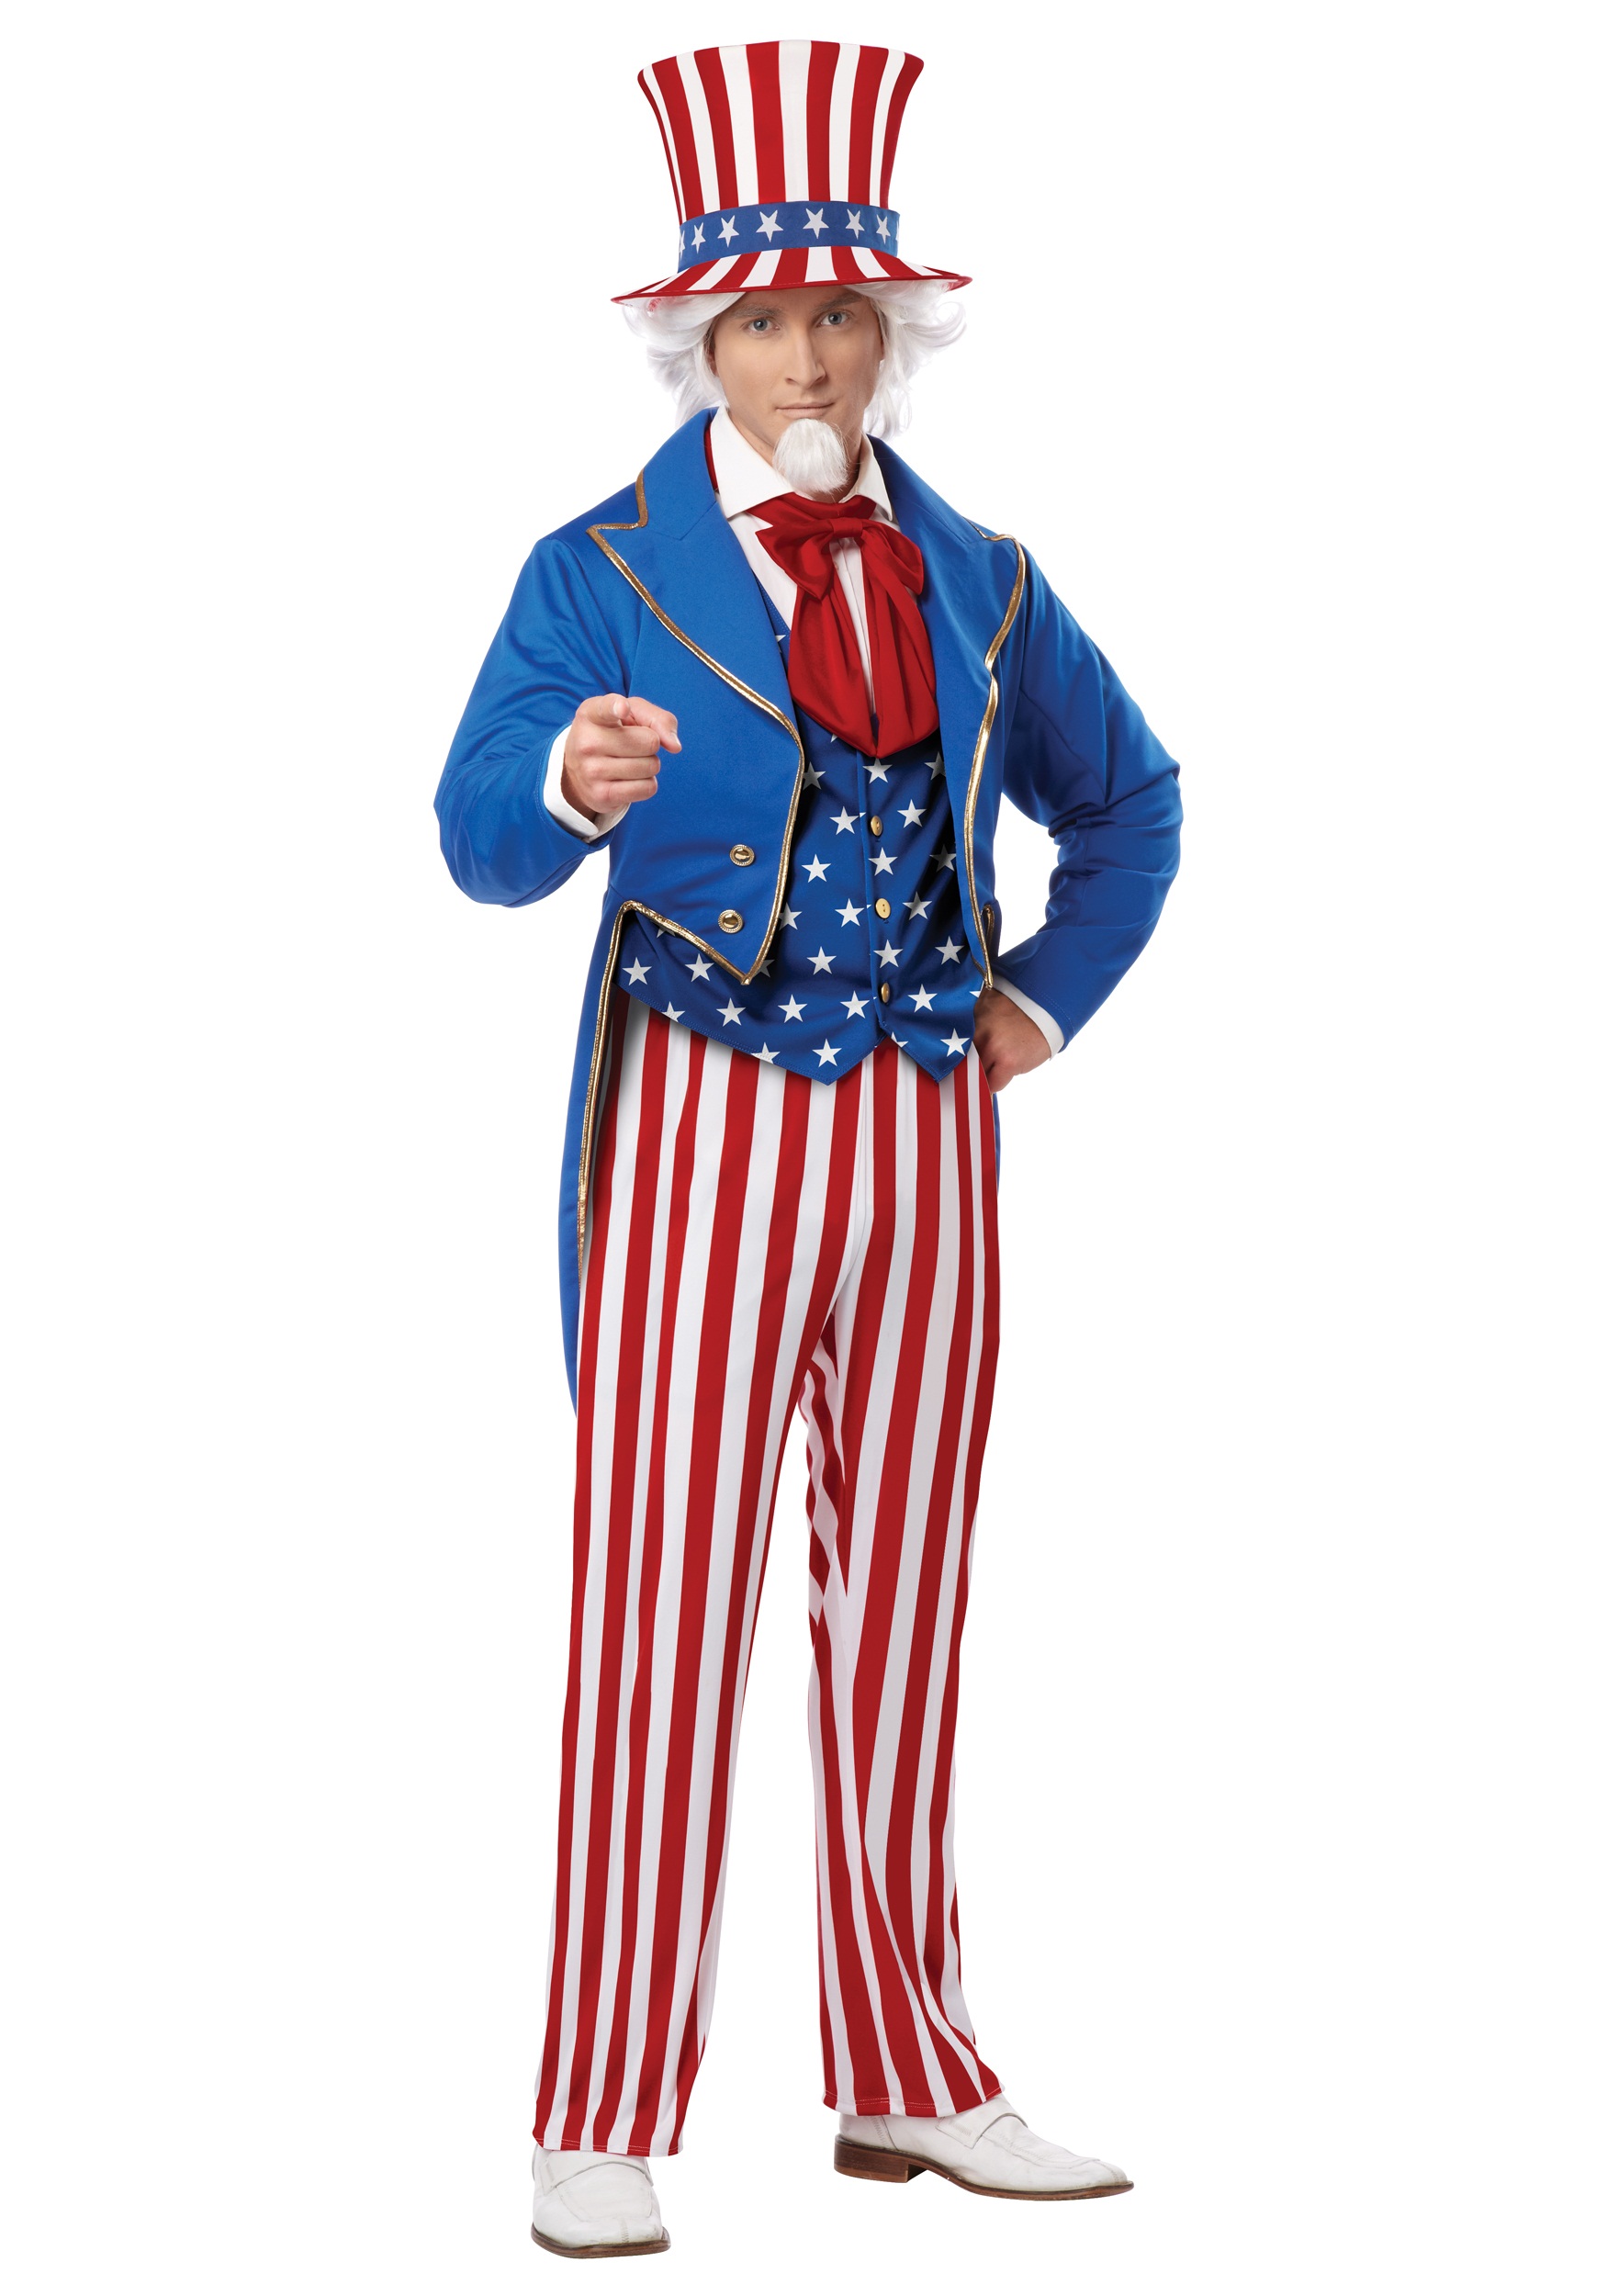 Patriot Man Vest Kit Adult Costume Patriotic Stars Stripes 4th Of July S/M L/XL 